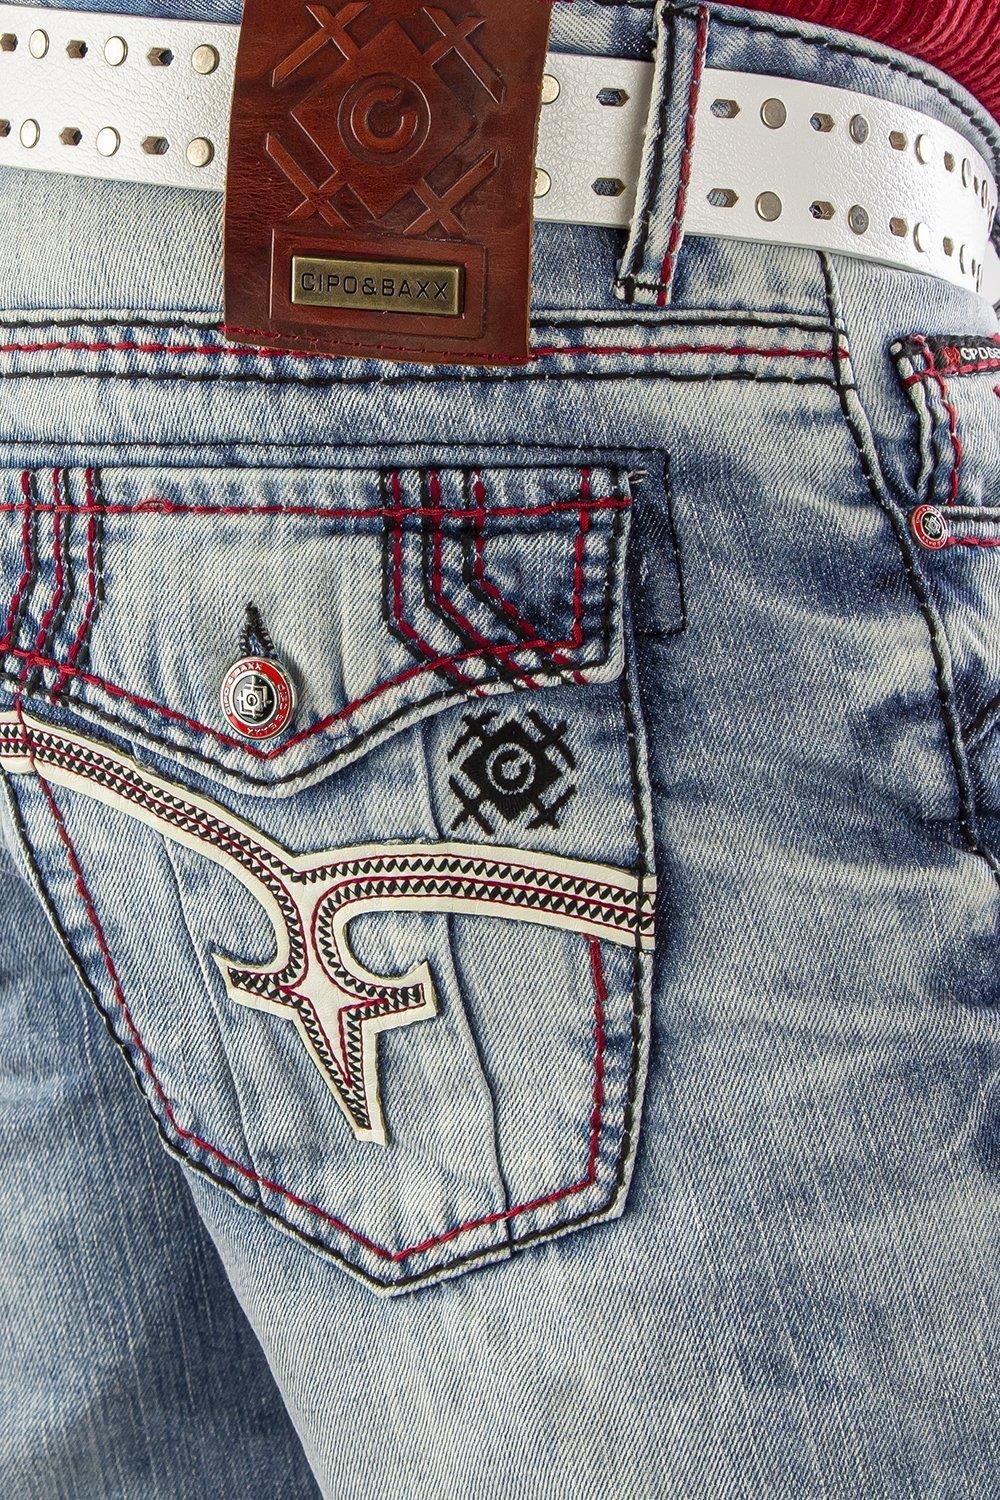 Spodnie jeansowe męskie DENIM CIPO & BAXX CD 612